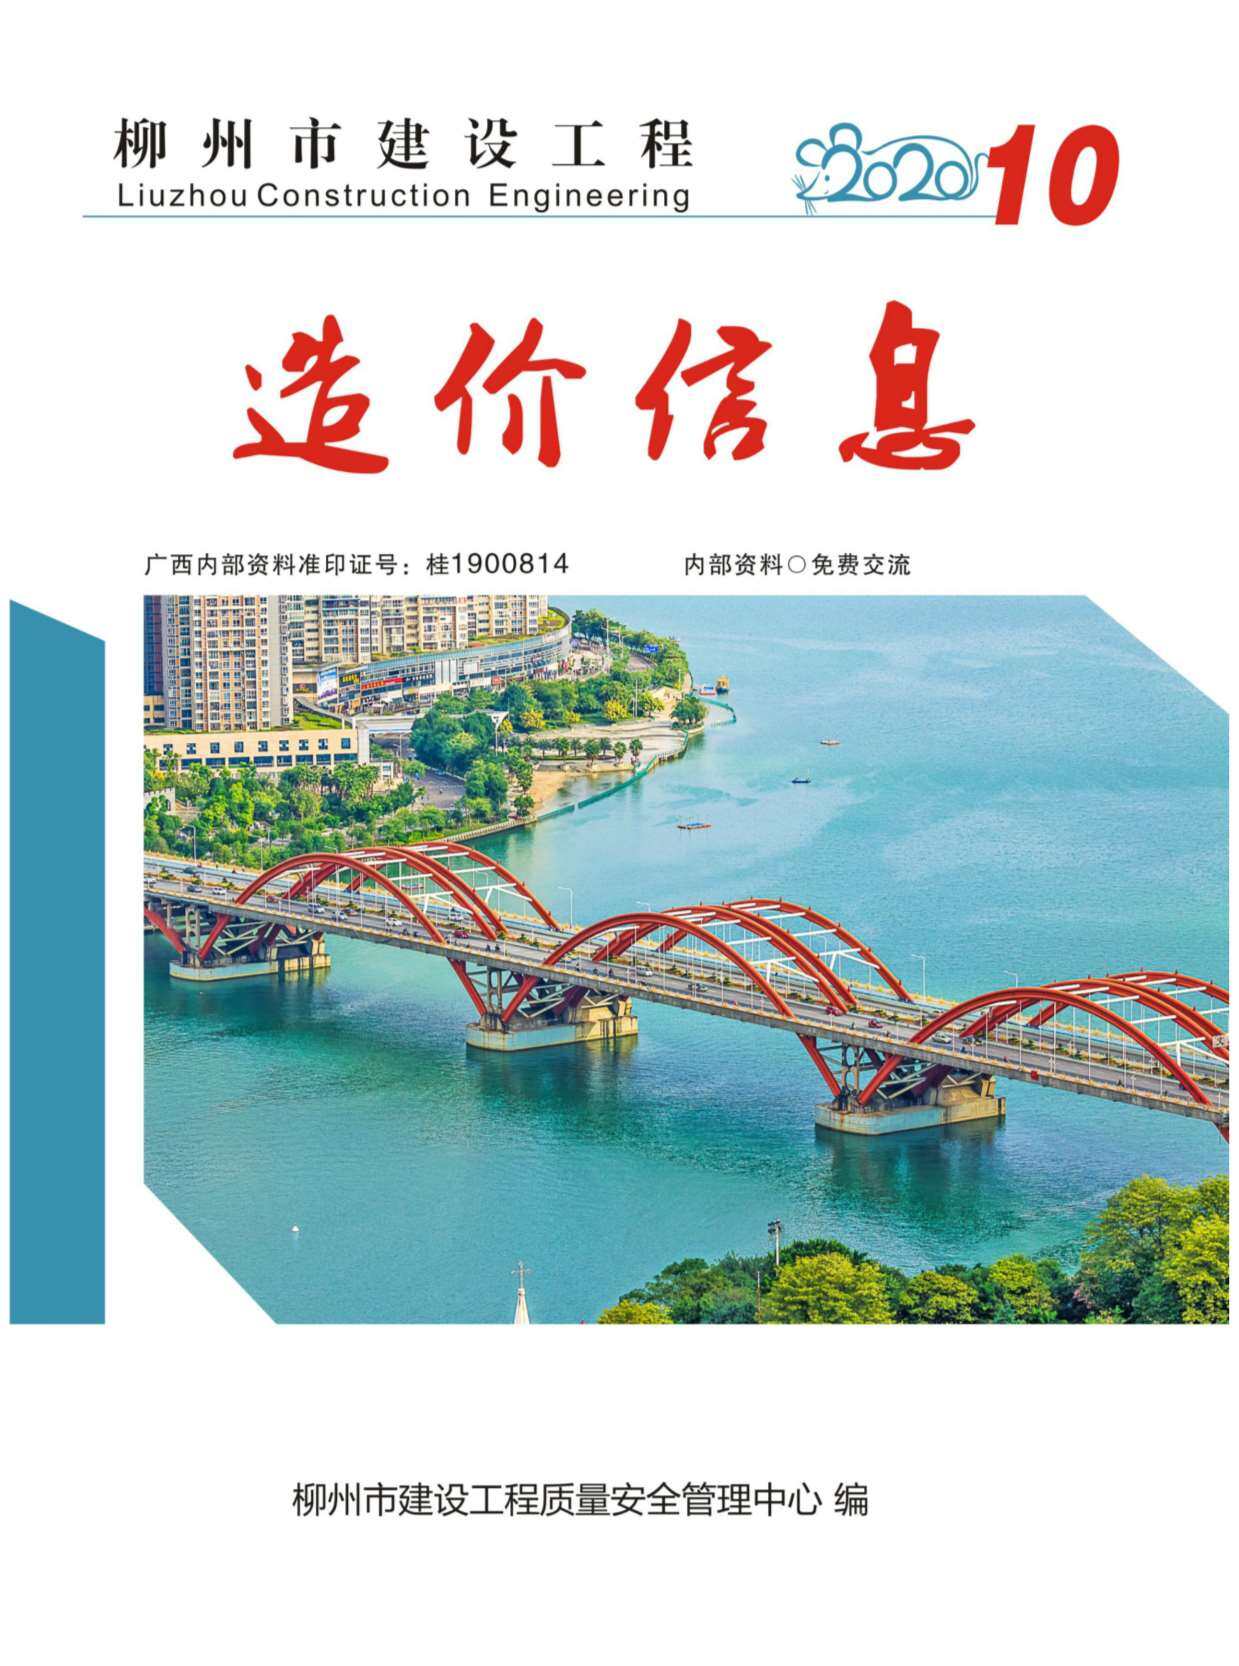 柳州市2020年10月工程造价信息期刊